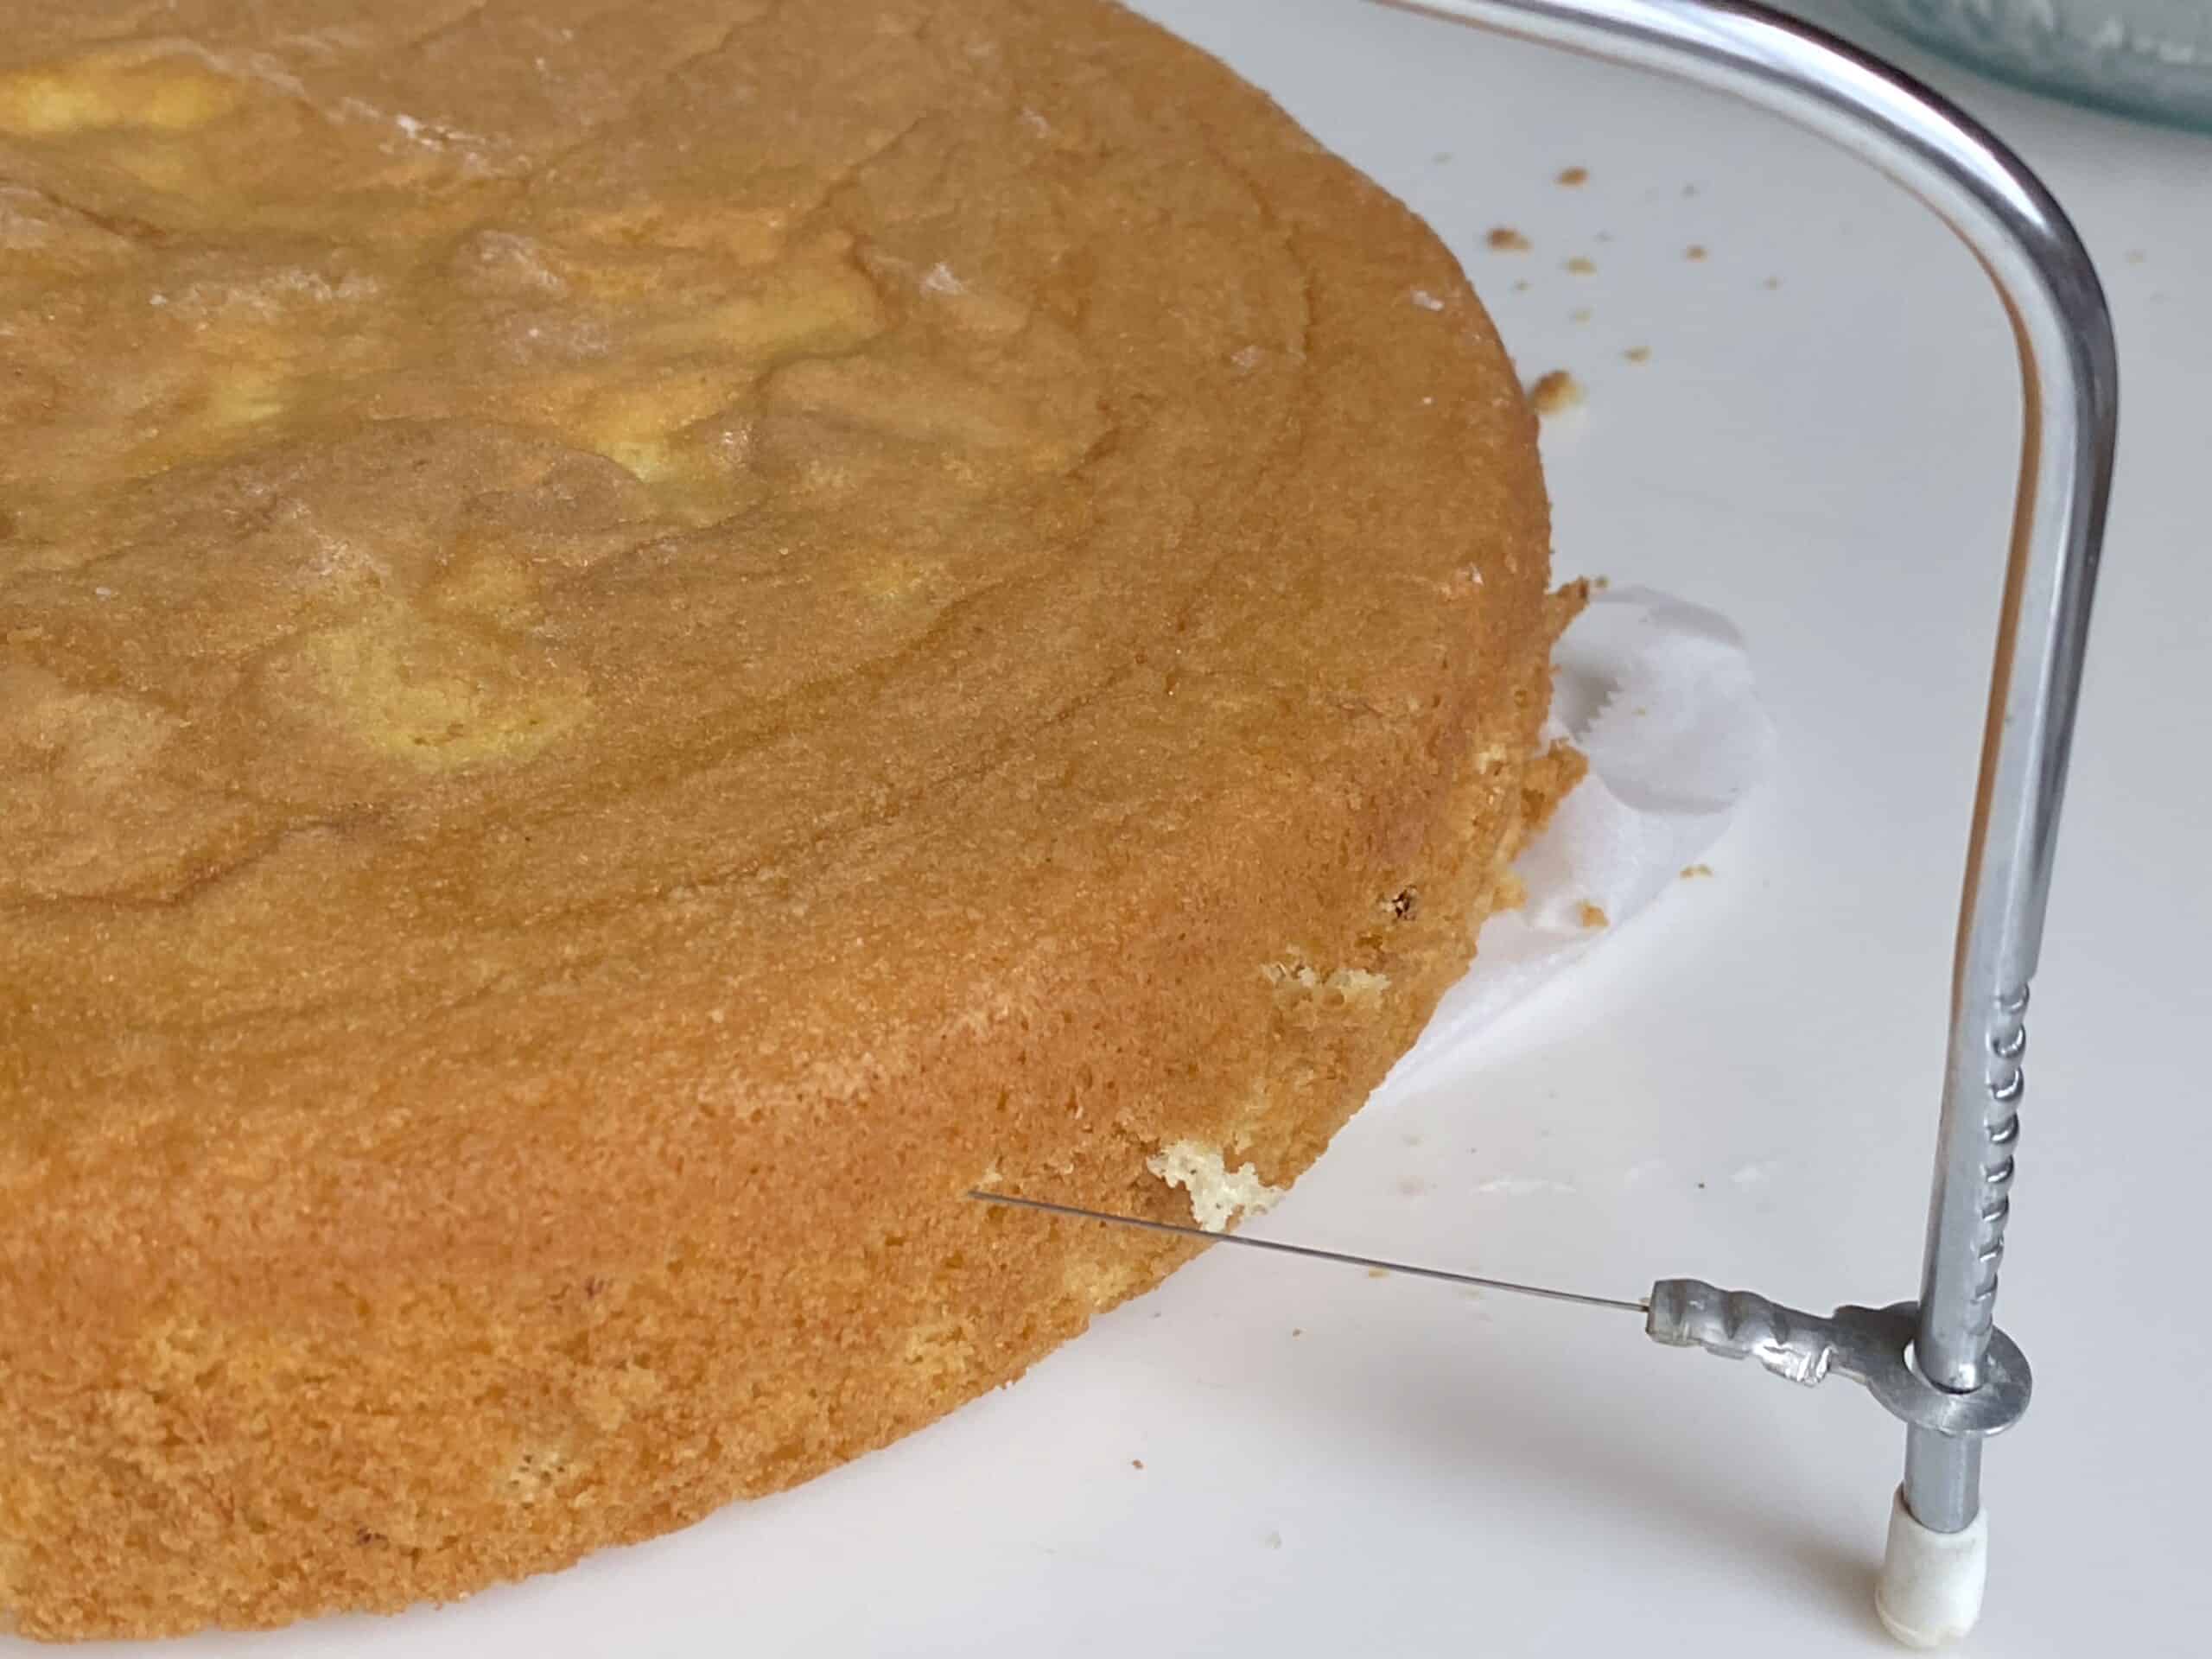 slicing cake in half